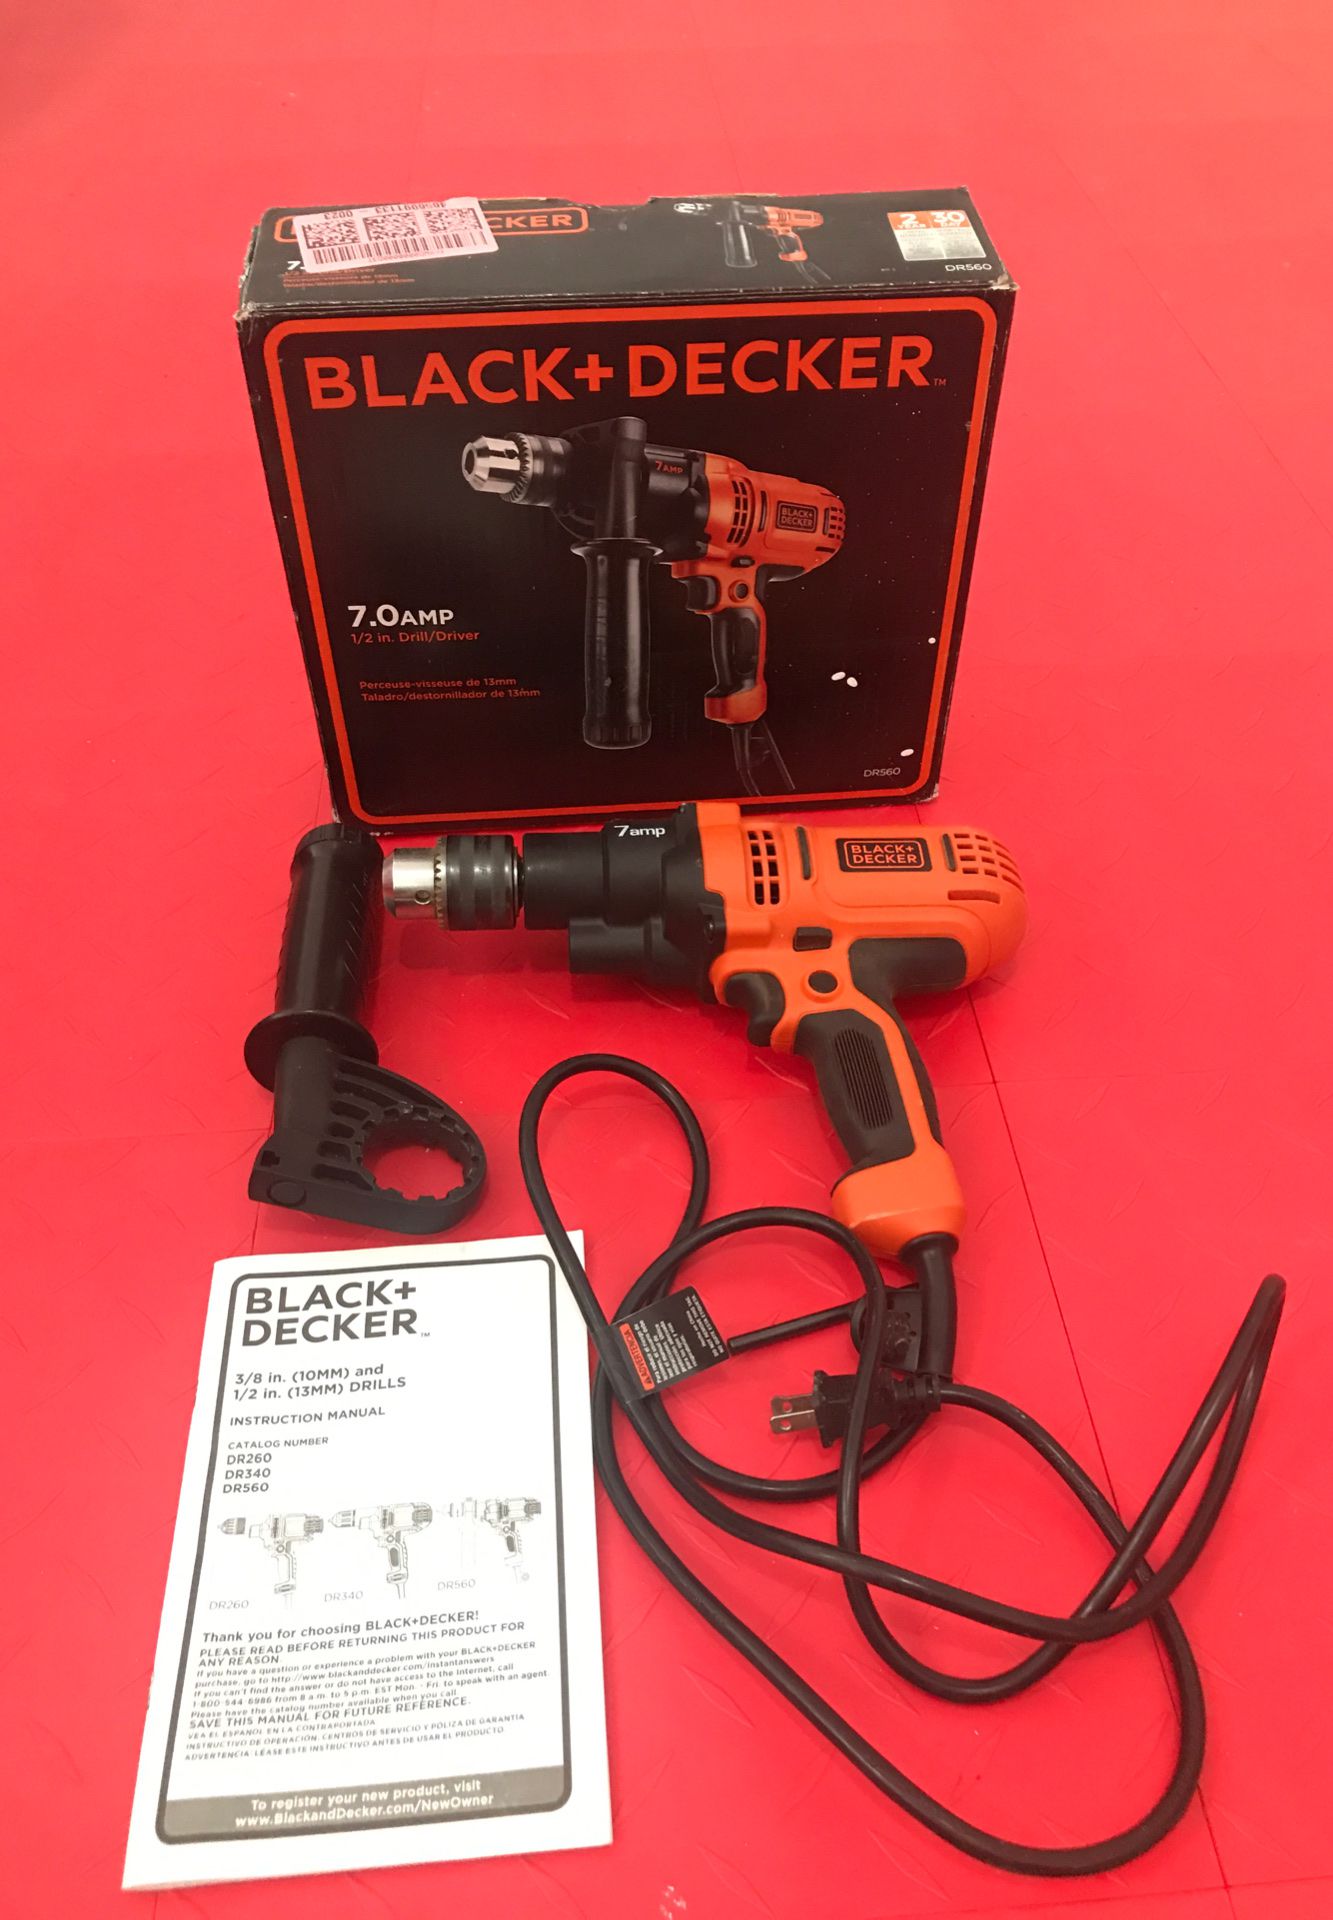 BLACK & DECKER 7.0 AMP 1/2 in Drill / Driver